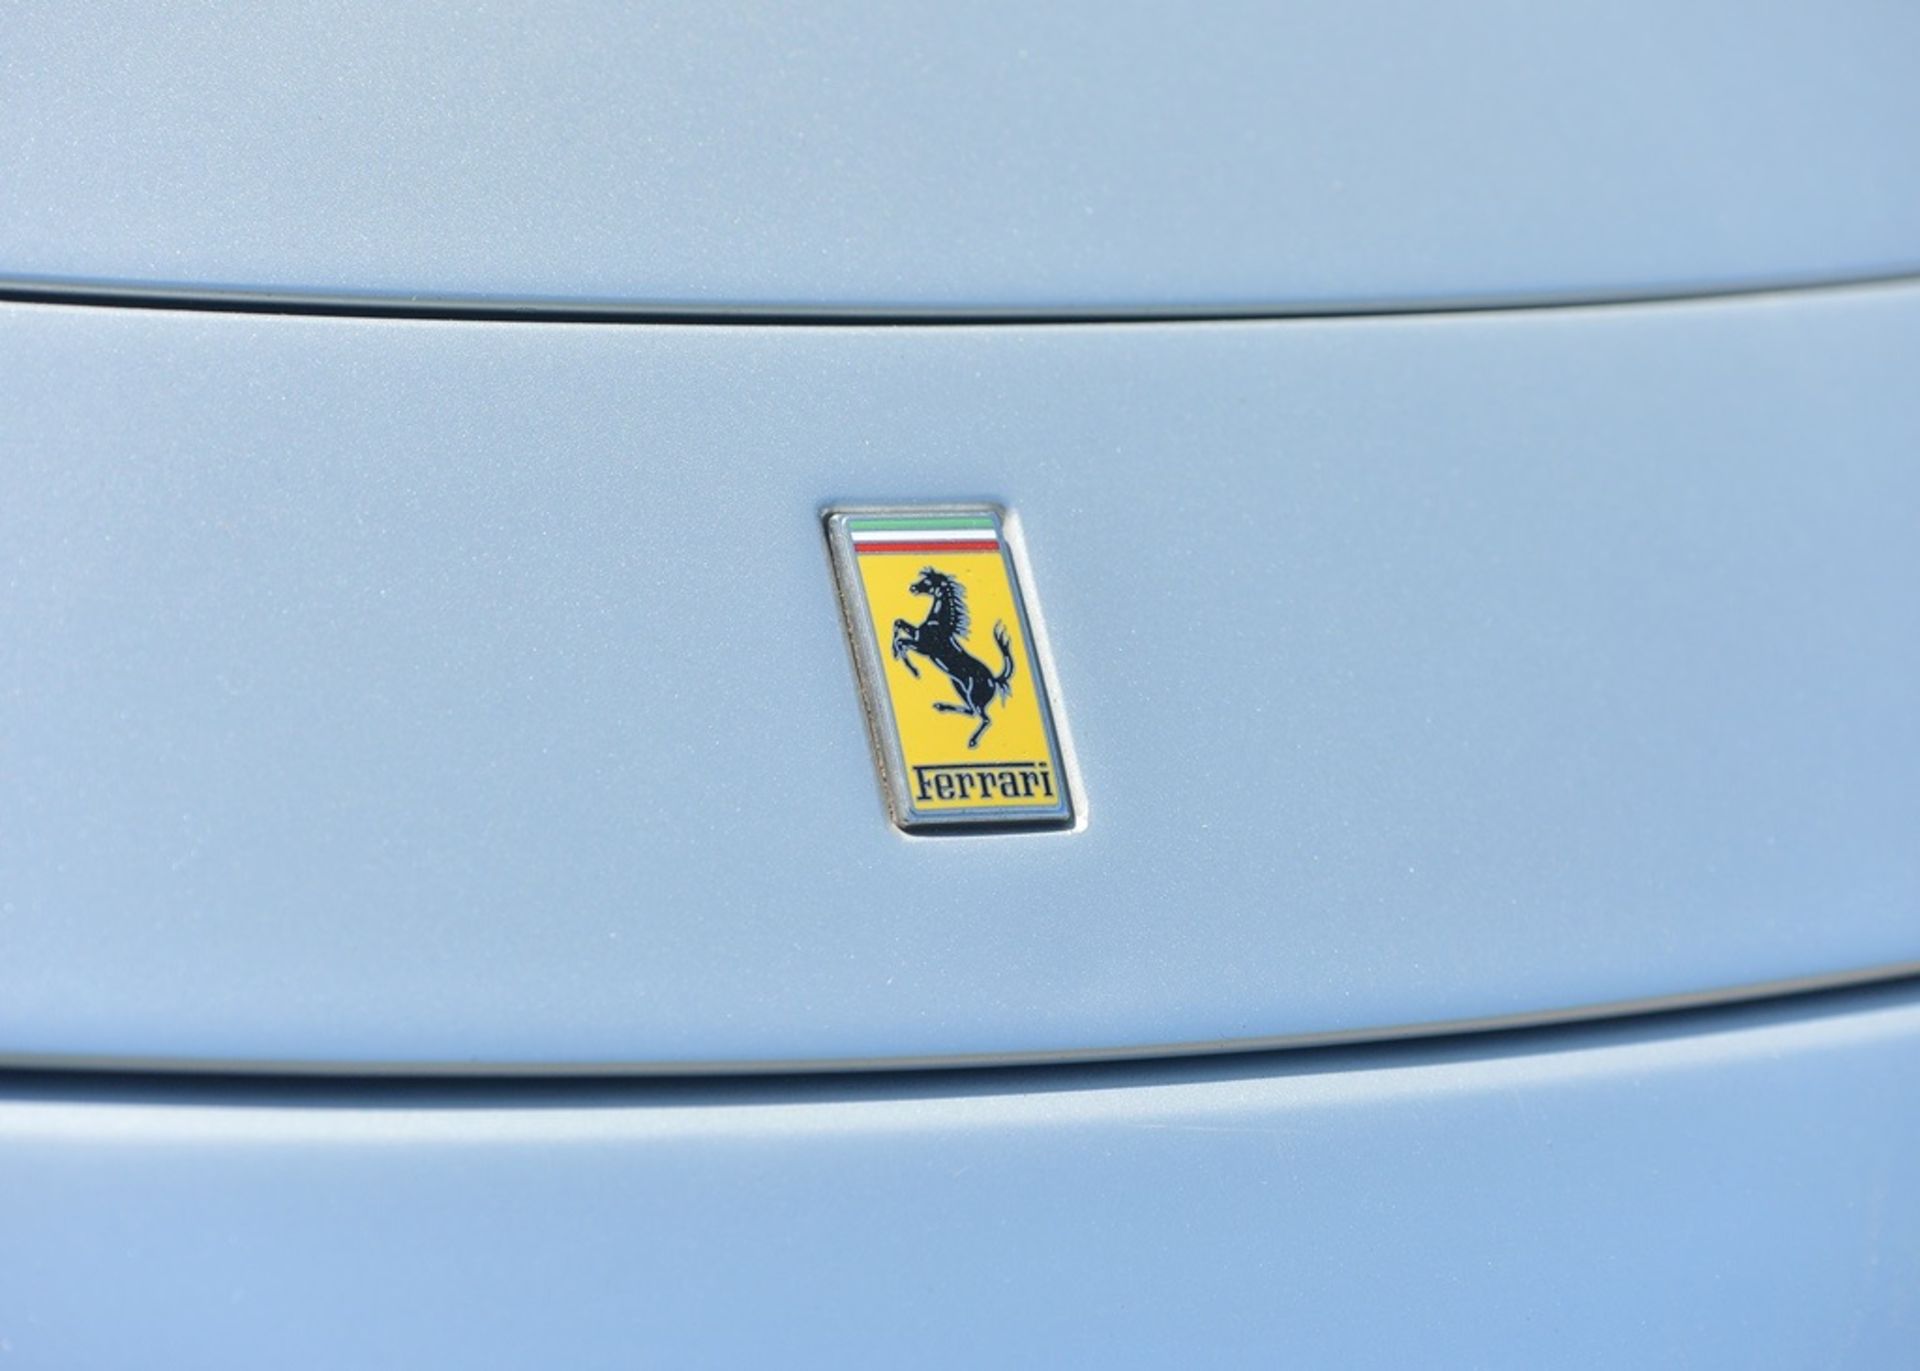 2005 Ferrari 612 Scaglietti - Image 12 of 18